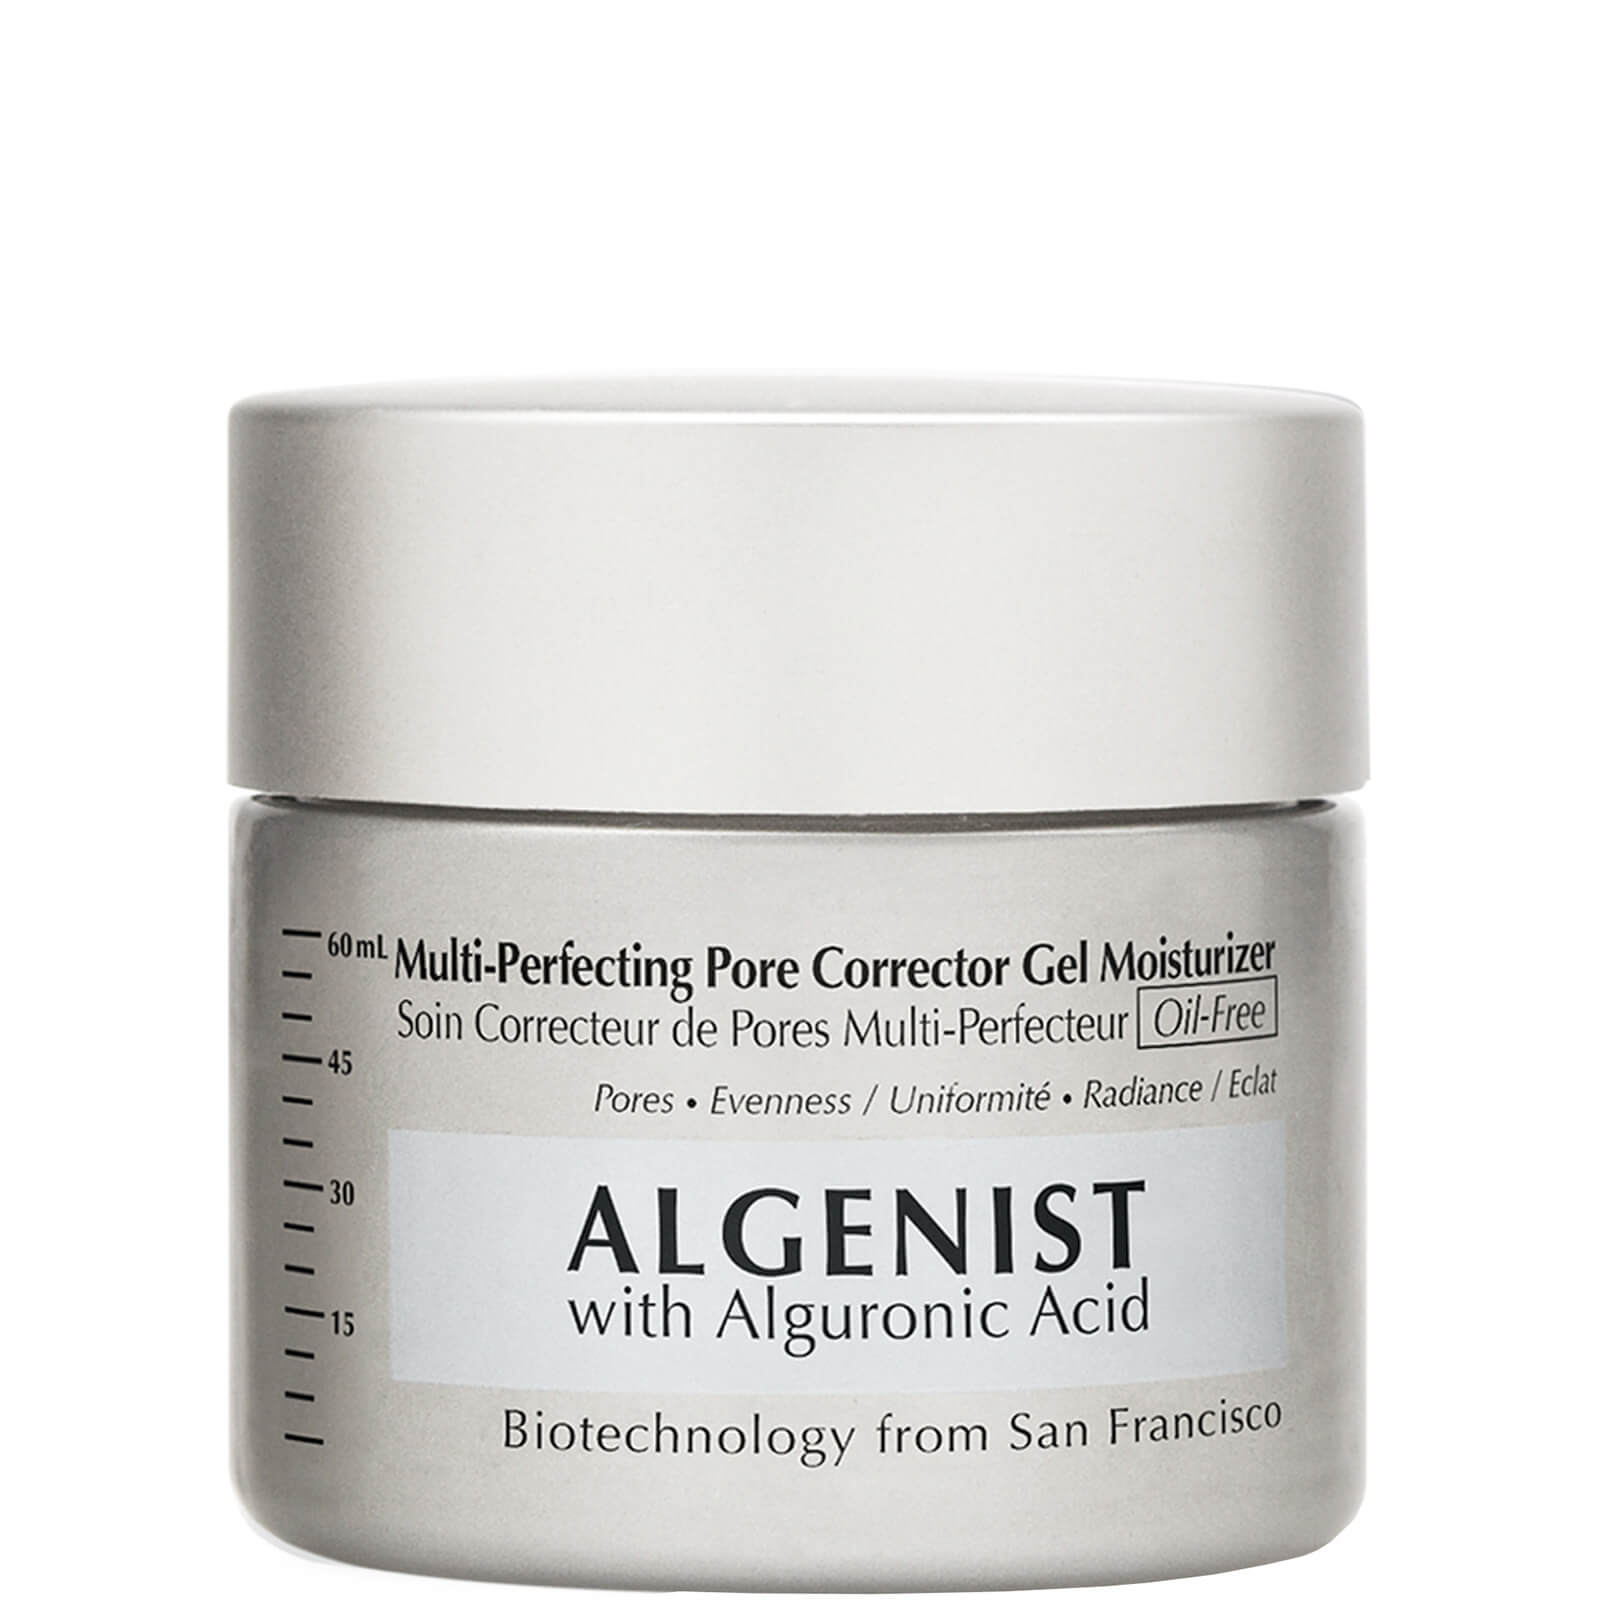 Crema hidratante en gel correctora de poros Multi-Perfecting de ALGENIST 60 ml